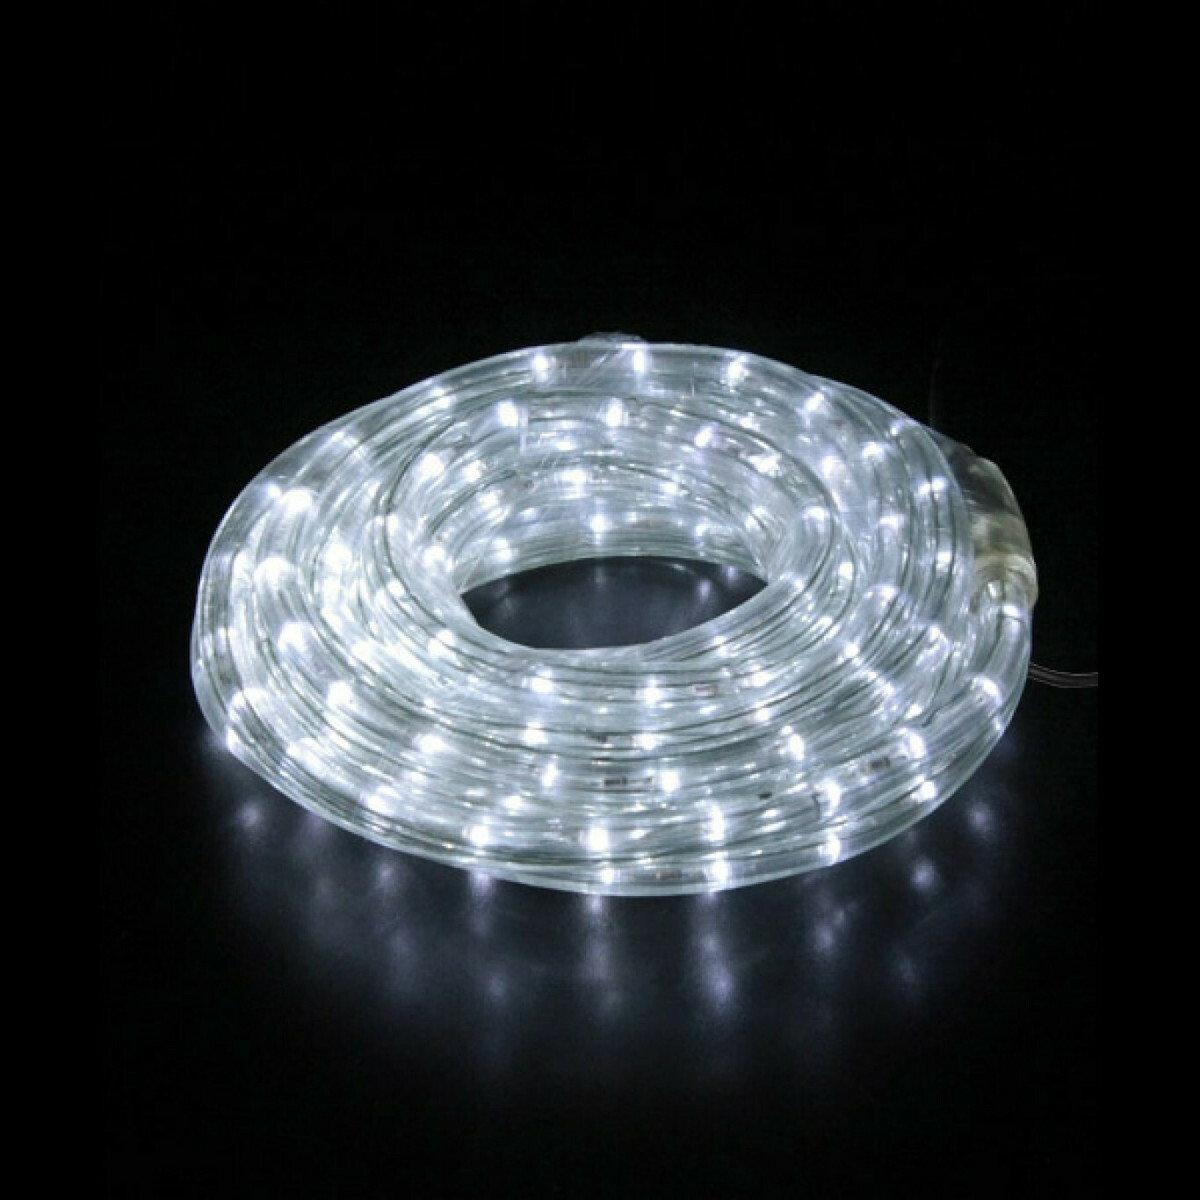 Φωτοσωλήνας LED Δικάναλος 10m IP44 - Ψυχρό Λευκό ΧΡΙΣΤΟΥΓΕΝΝΙΑΤΙΚΟΣ ΔΙΑΚΟΣΜΟΣ